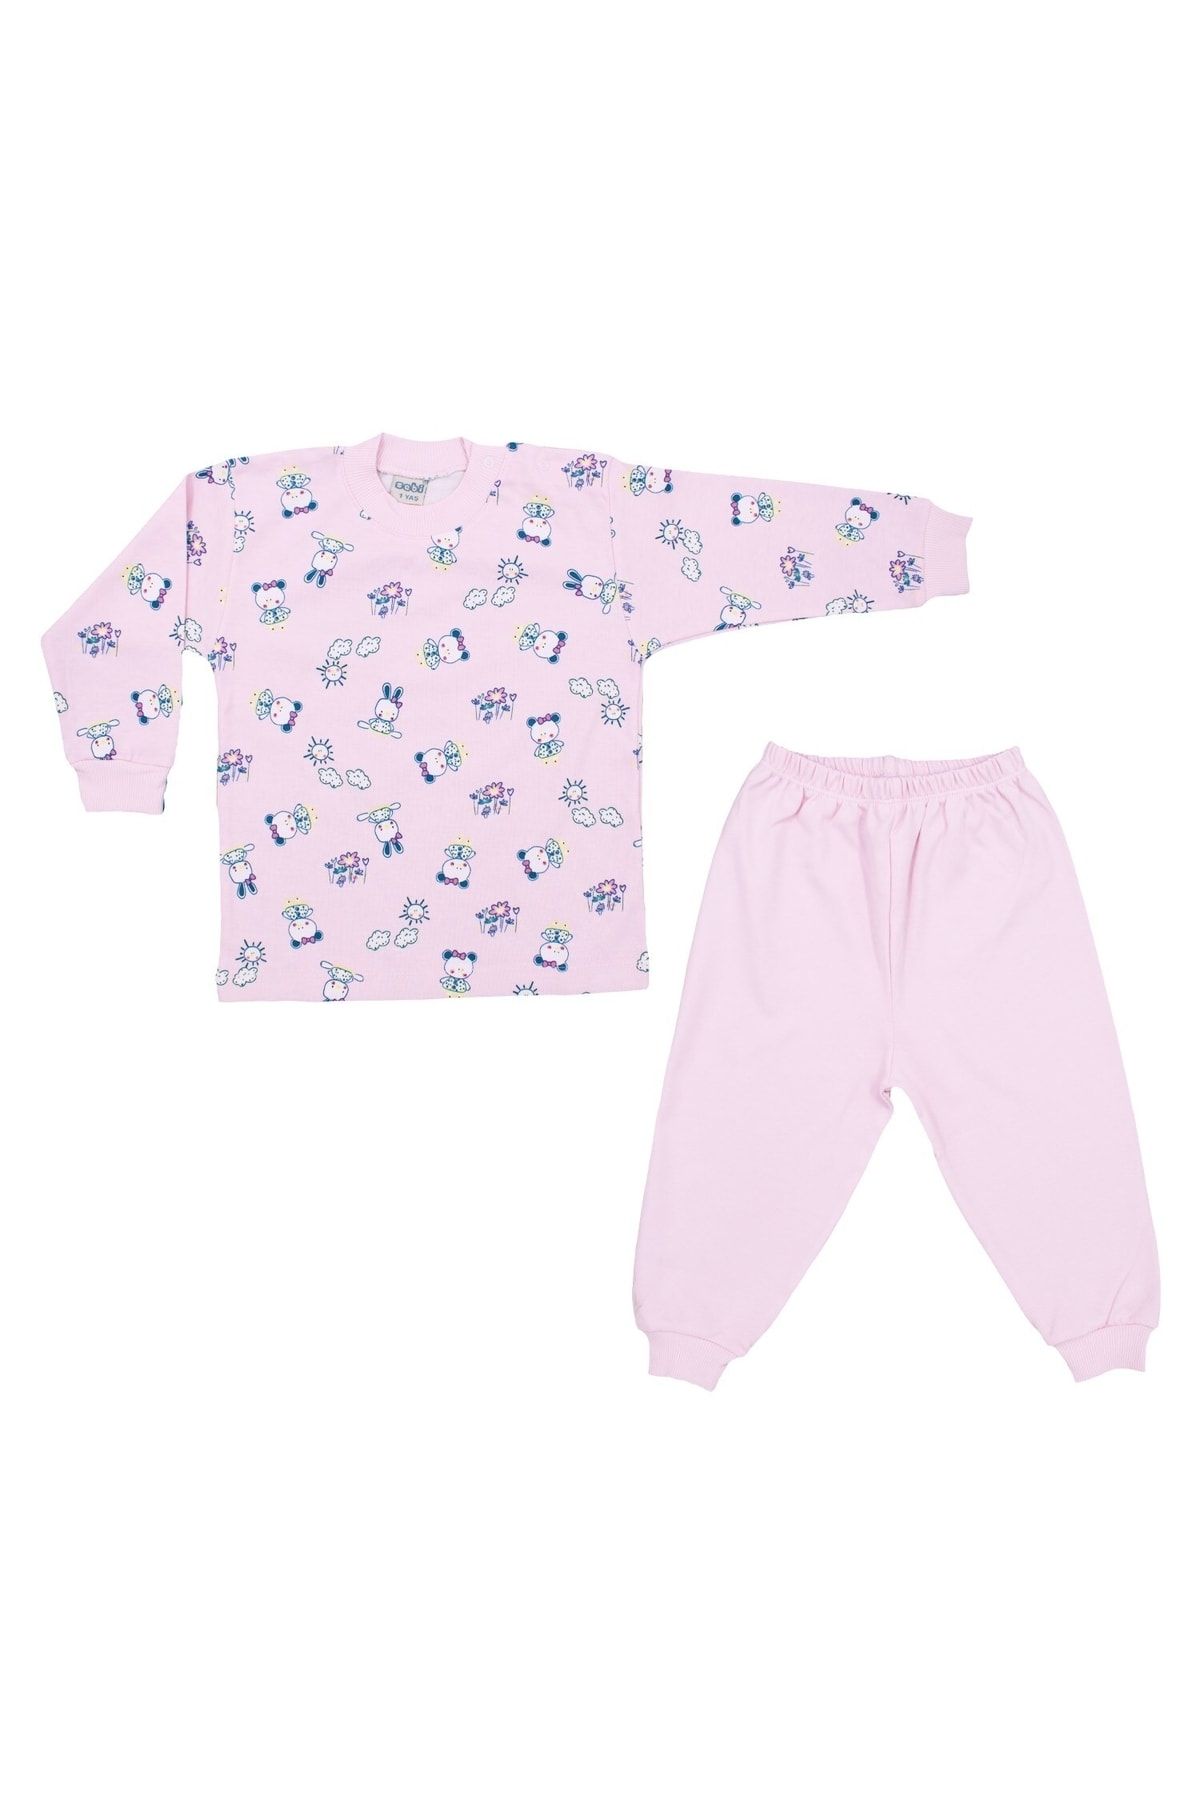 Sebi Bebe Bebe Ayılı Kız Bebek Pijama Takımı 2418